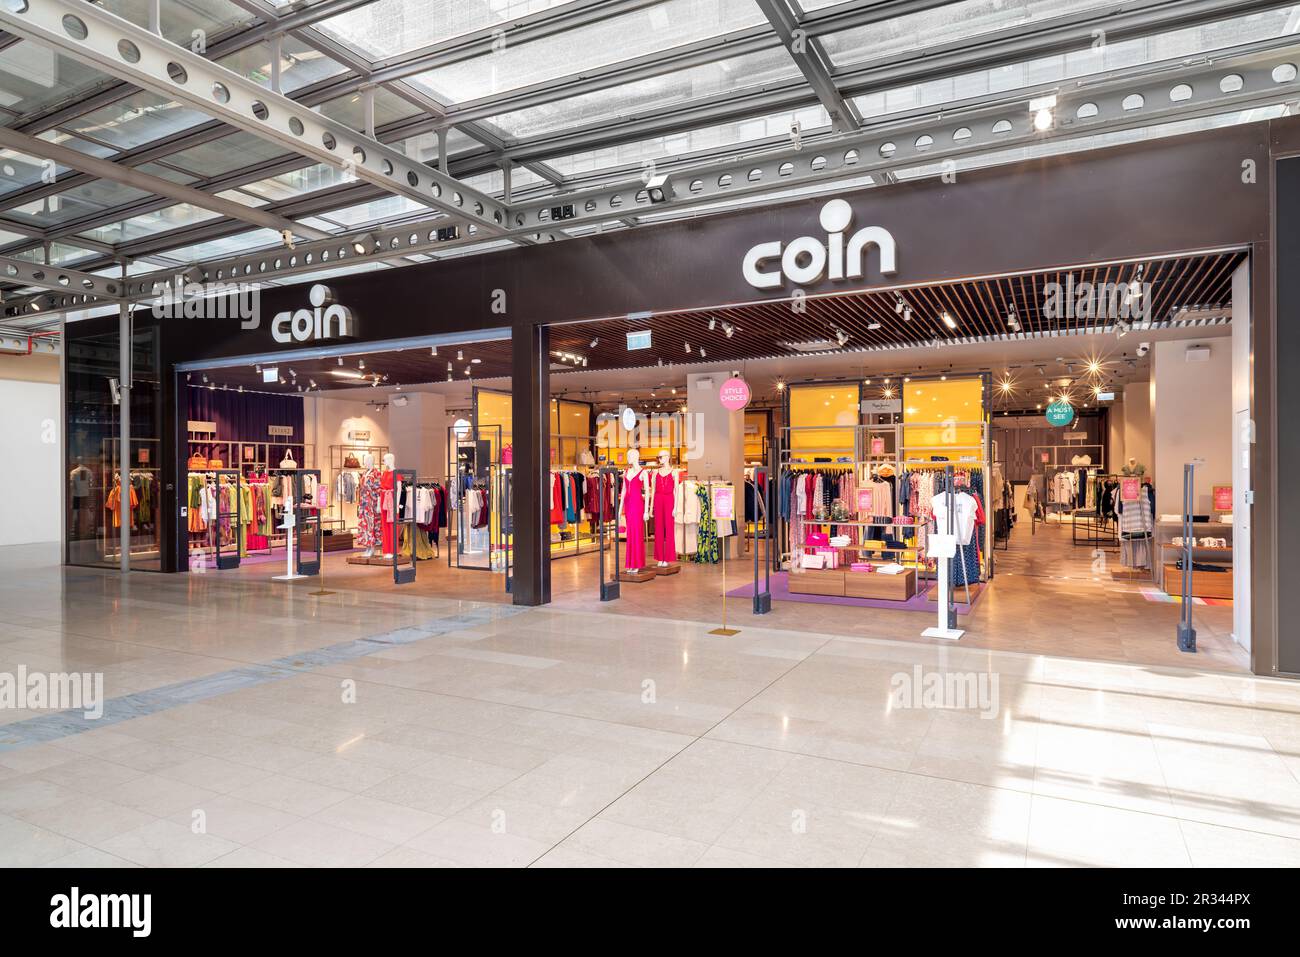 Turin, Italie - 2023 mai 22 : entrée du magasin de pièces de monnaie dans le centre commercial Lingotto. Coin est une chaîne italienne de grands magasins dédiés au monde du CLO Banque D'Images